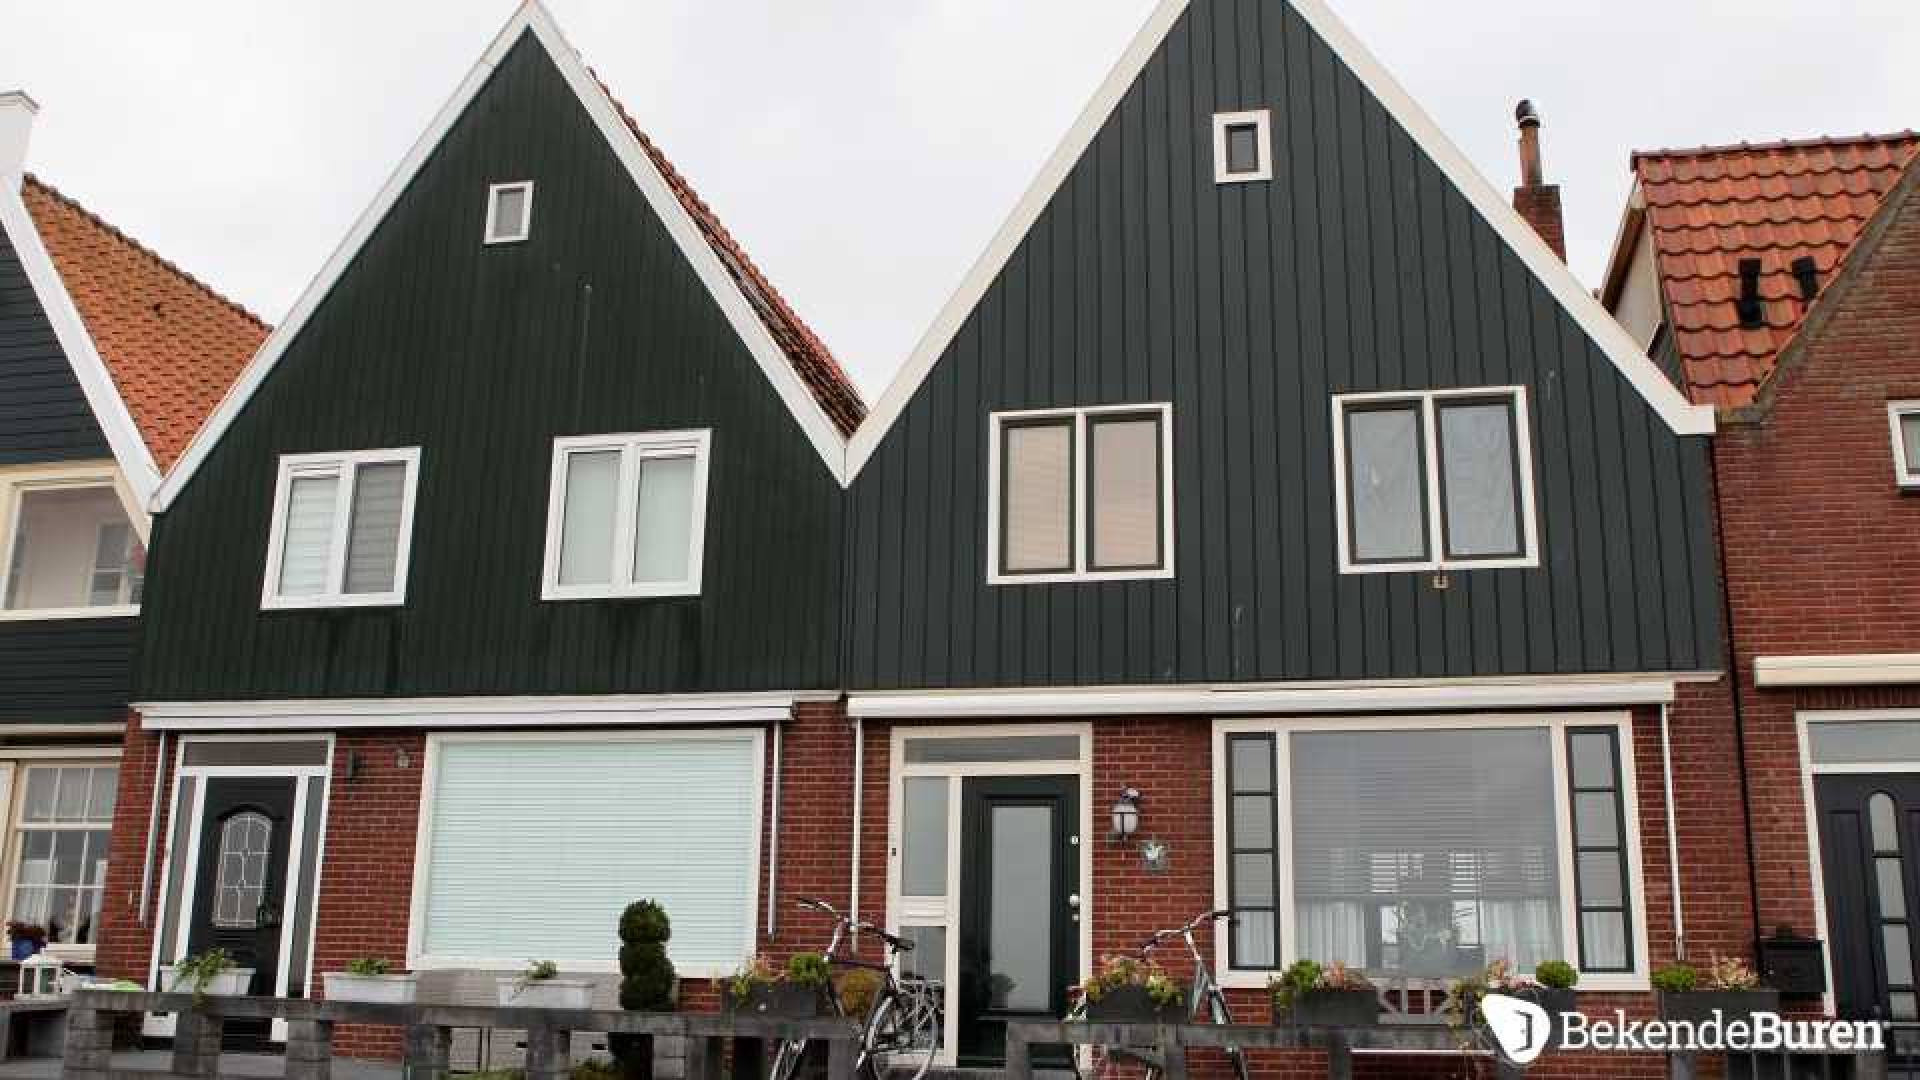 Jan Smit koopt dijkhuis in Volendam. Zie foto's 3